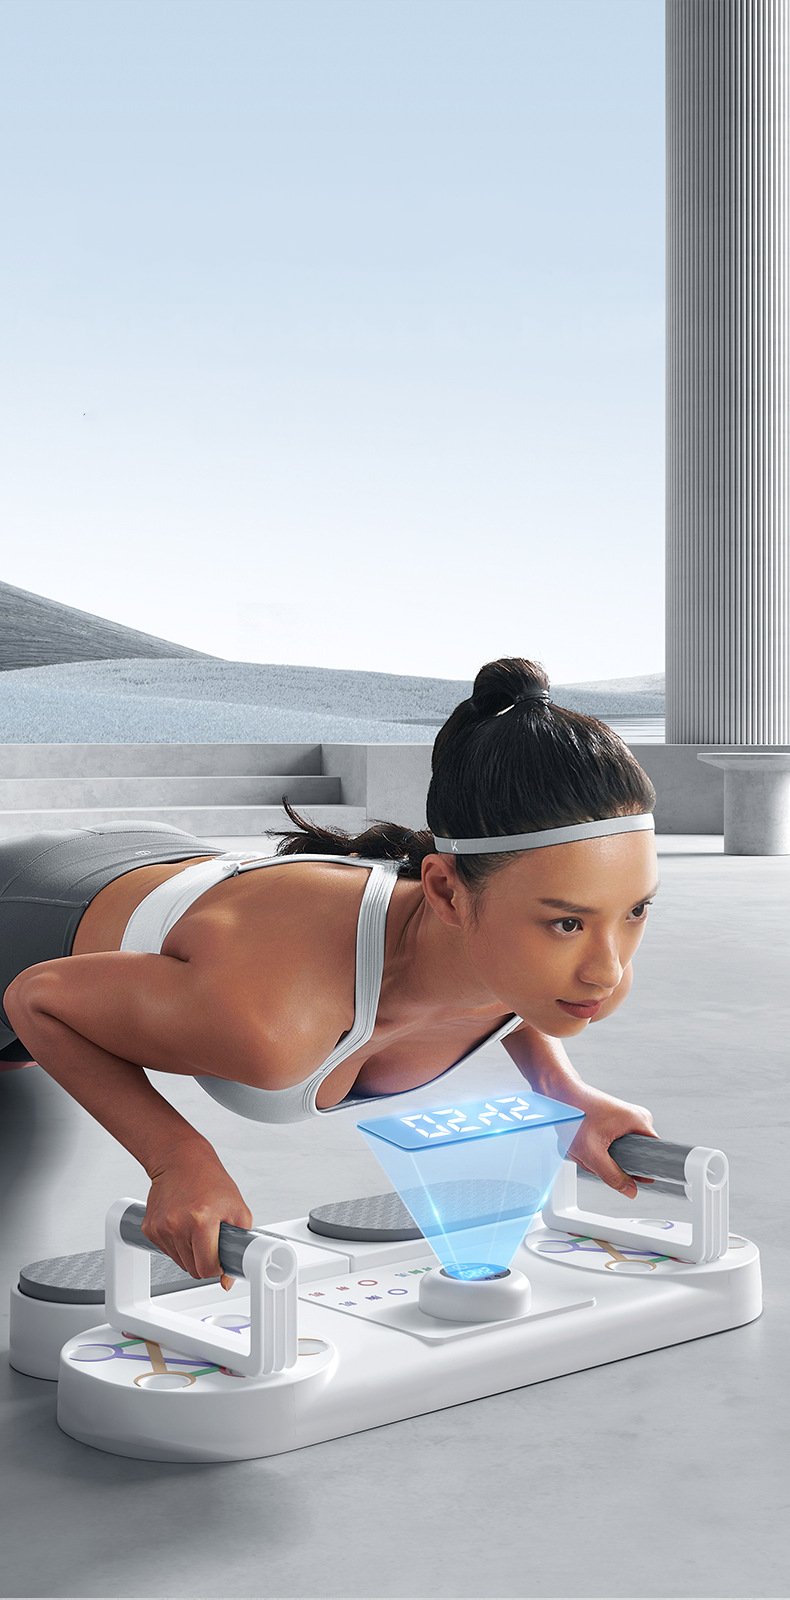 Thiết bị Squat Plank cơ bụng kết hợp chống đẩy phát triển toàn diện cơ thể Gym Fitness (có đồng hồ và dây kéo)